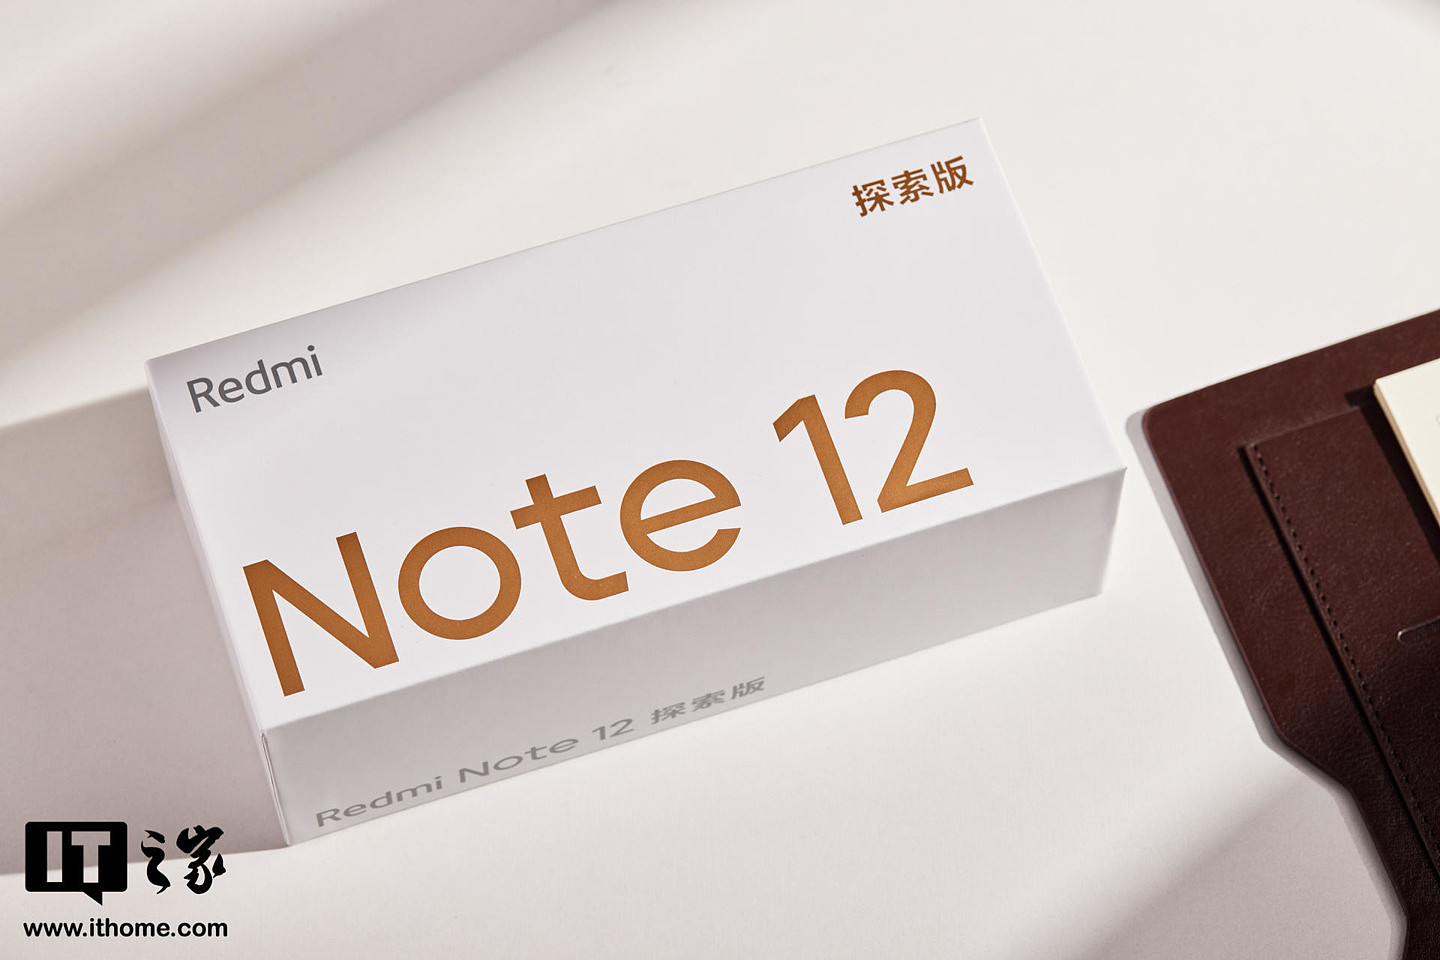 【IT之家评测室】Redmi Note 12 探索版评测：“高端产品大众化”的先行者 - 1